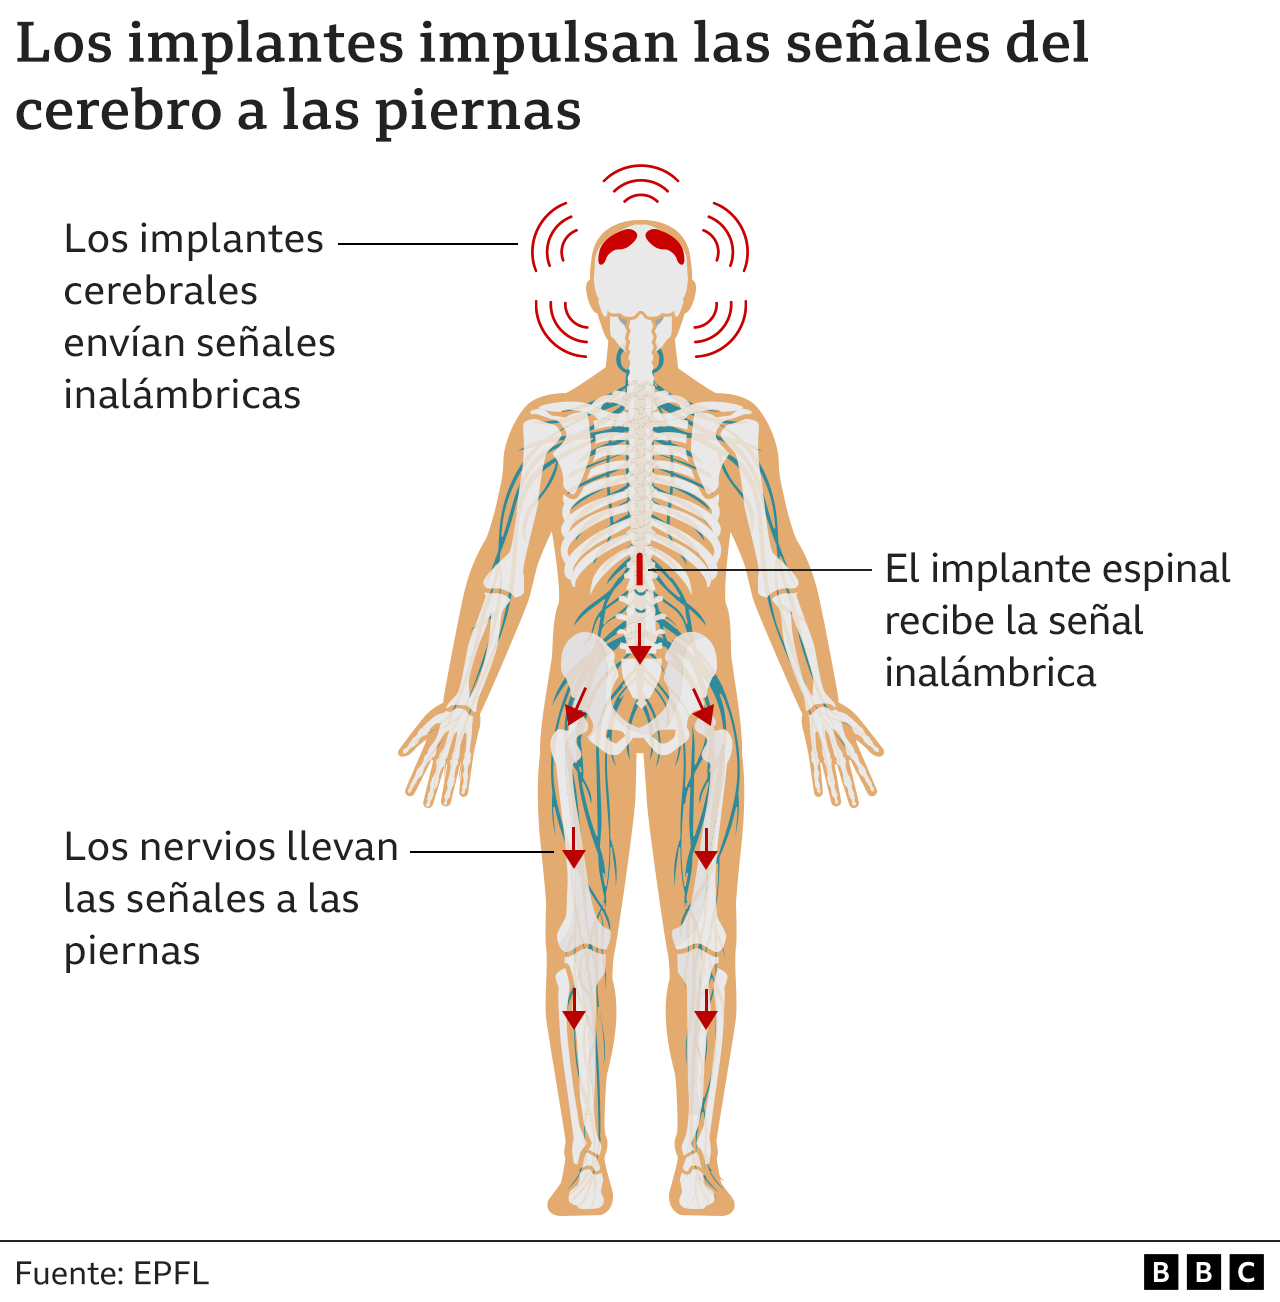 Ilustración de la BBC sobre el sistema de implantes